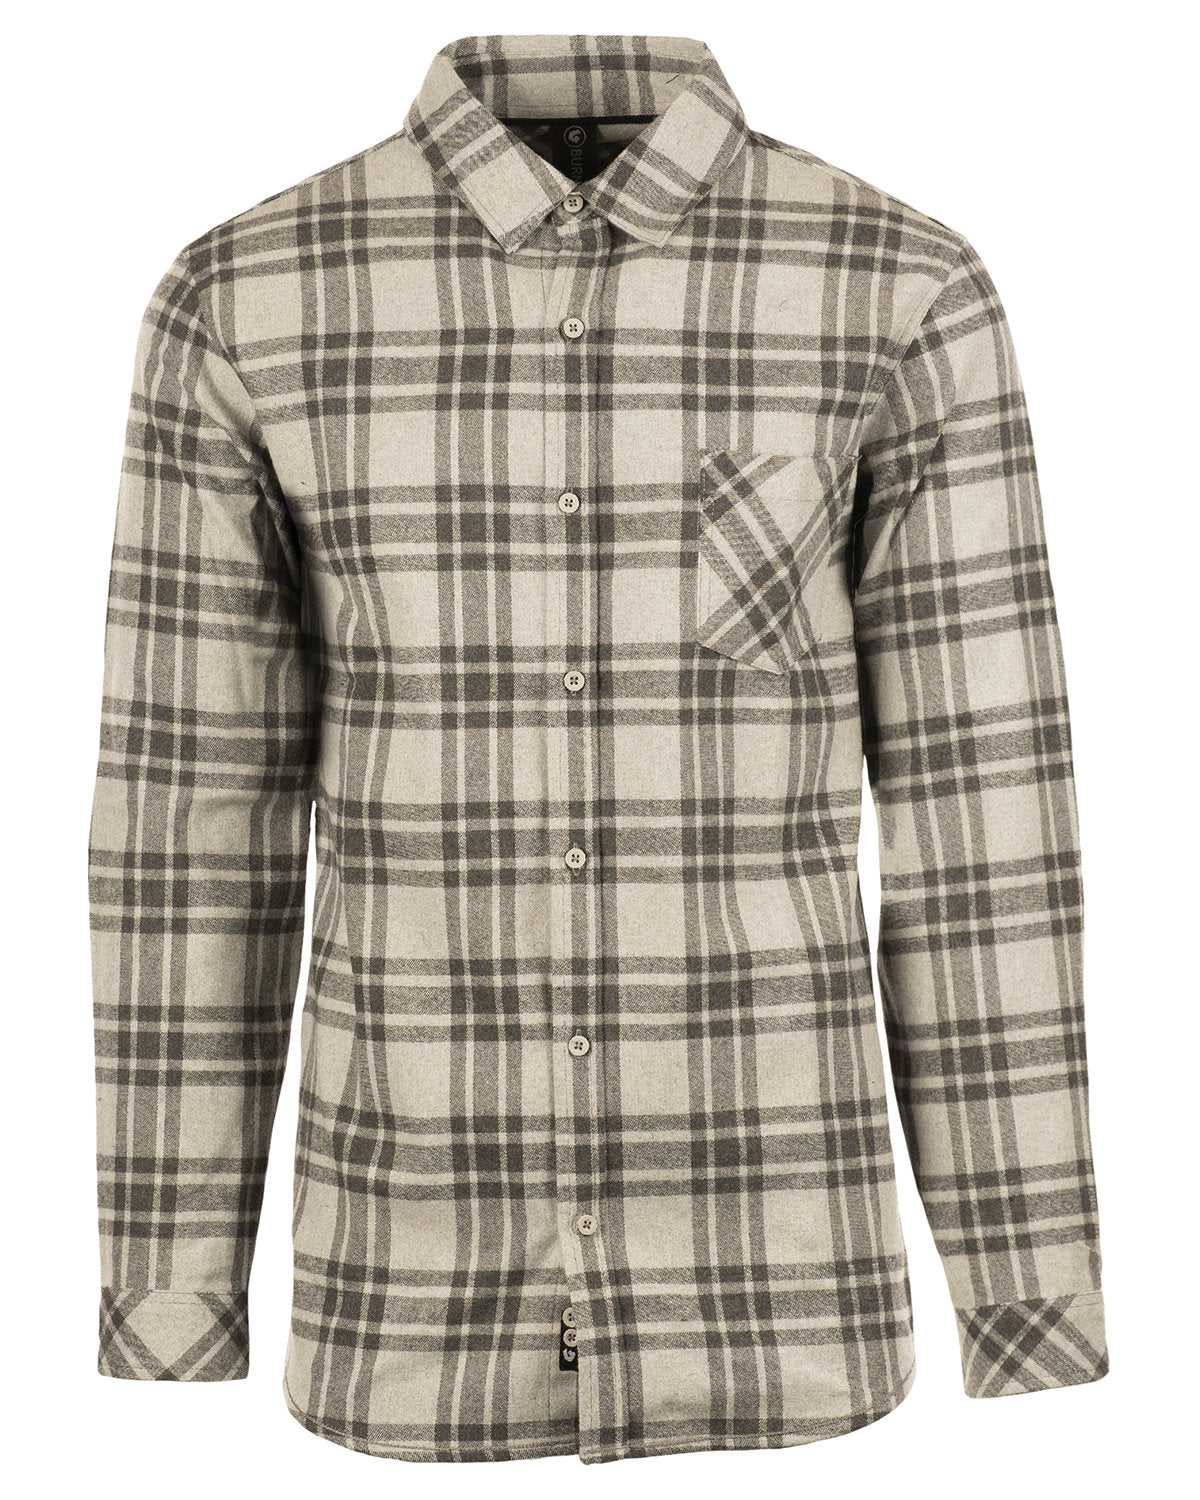 Burnside 8212 Open Pocket Long Sleeve Flannel Shirt - Gray/ Steel - HIT a Double - 1